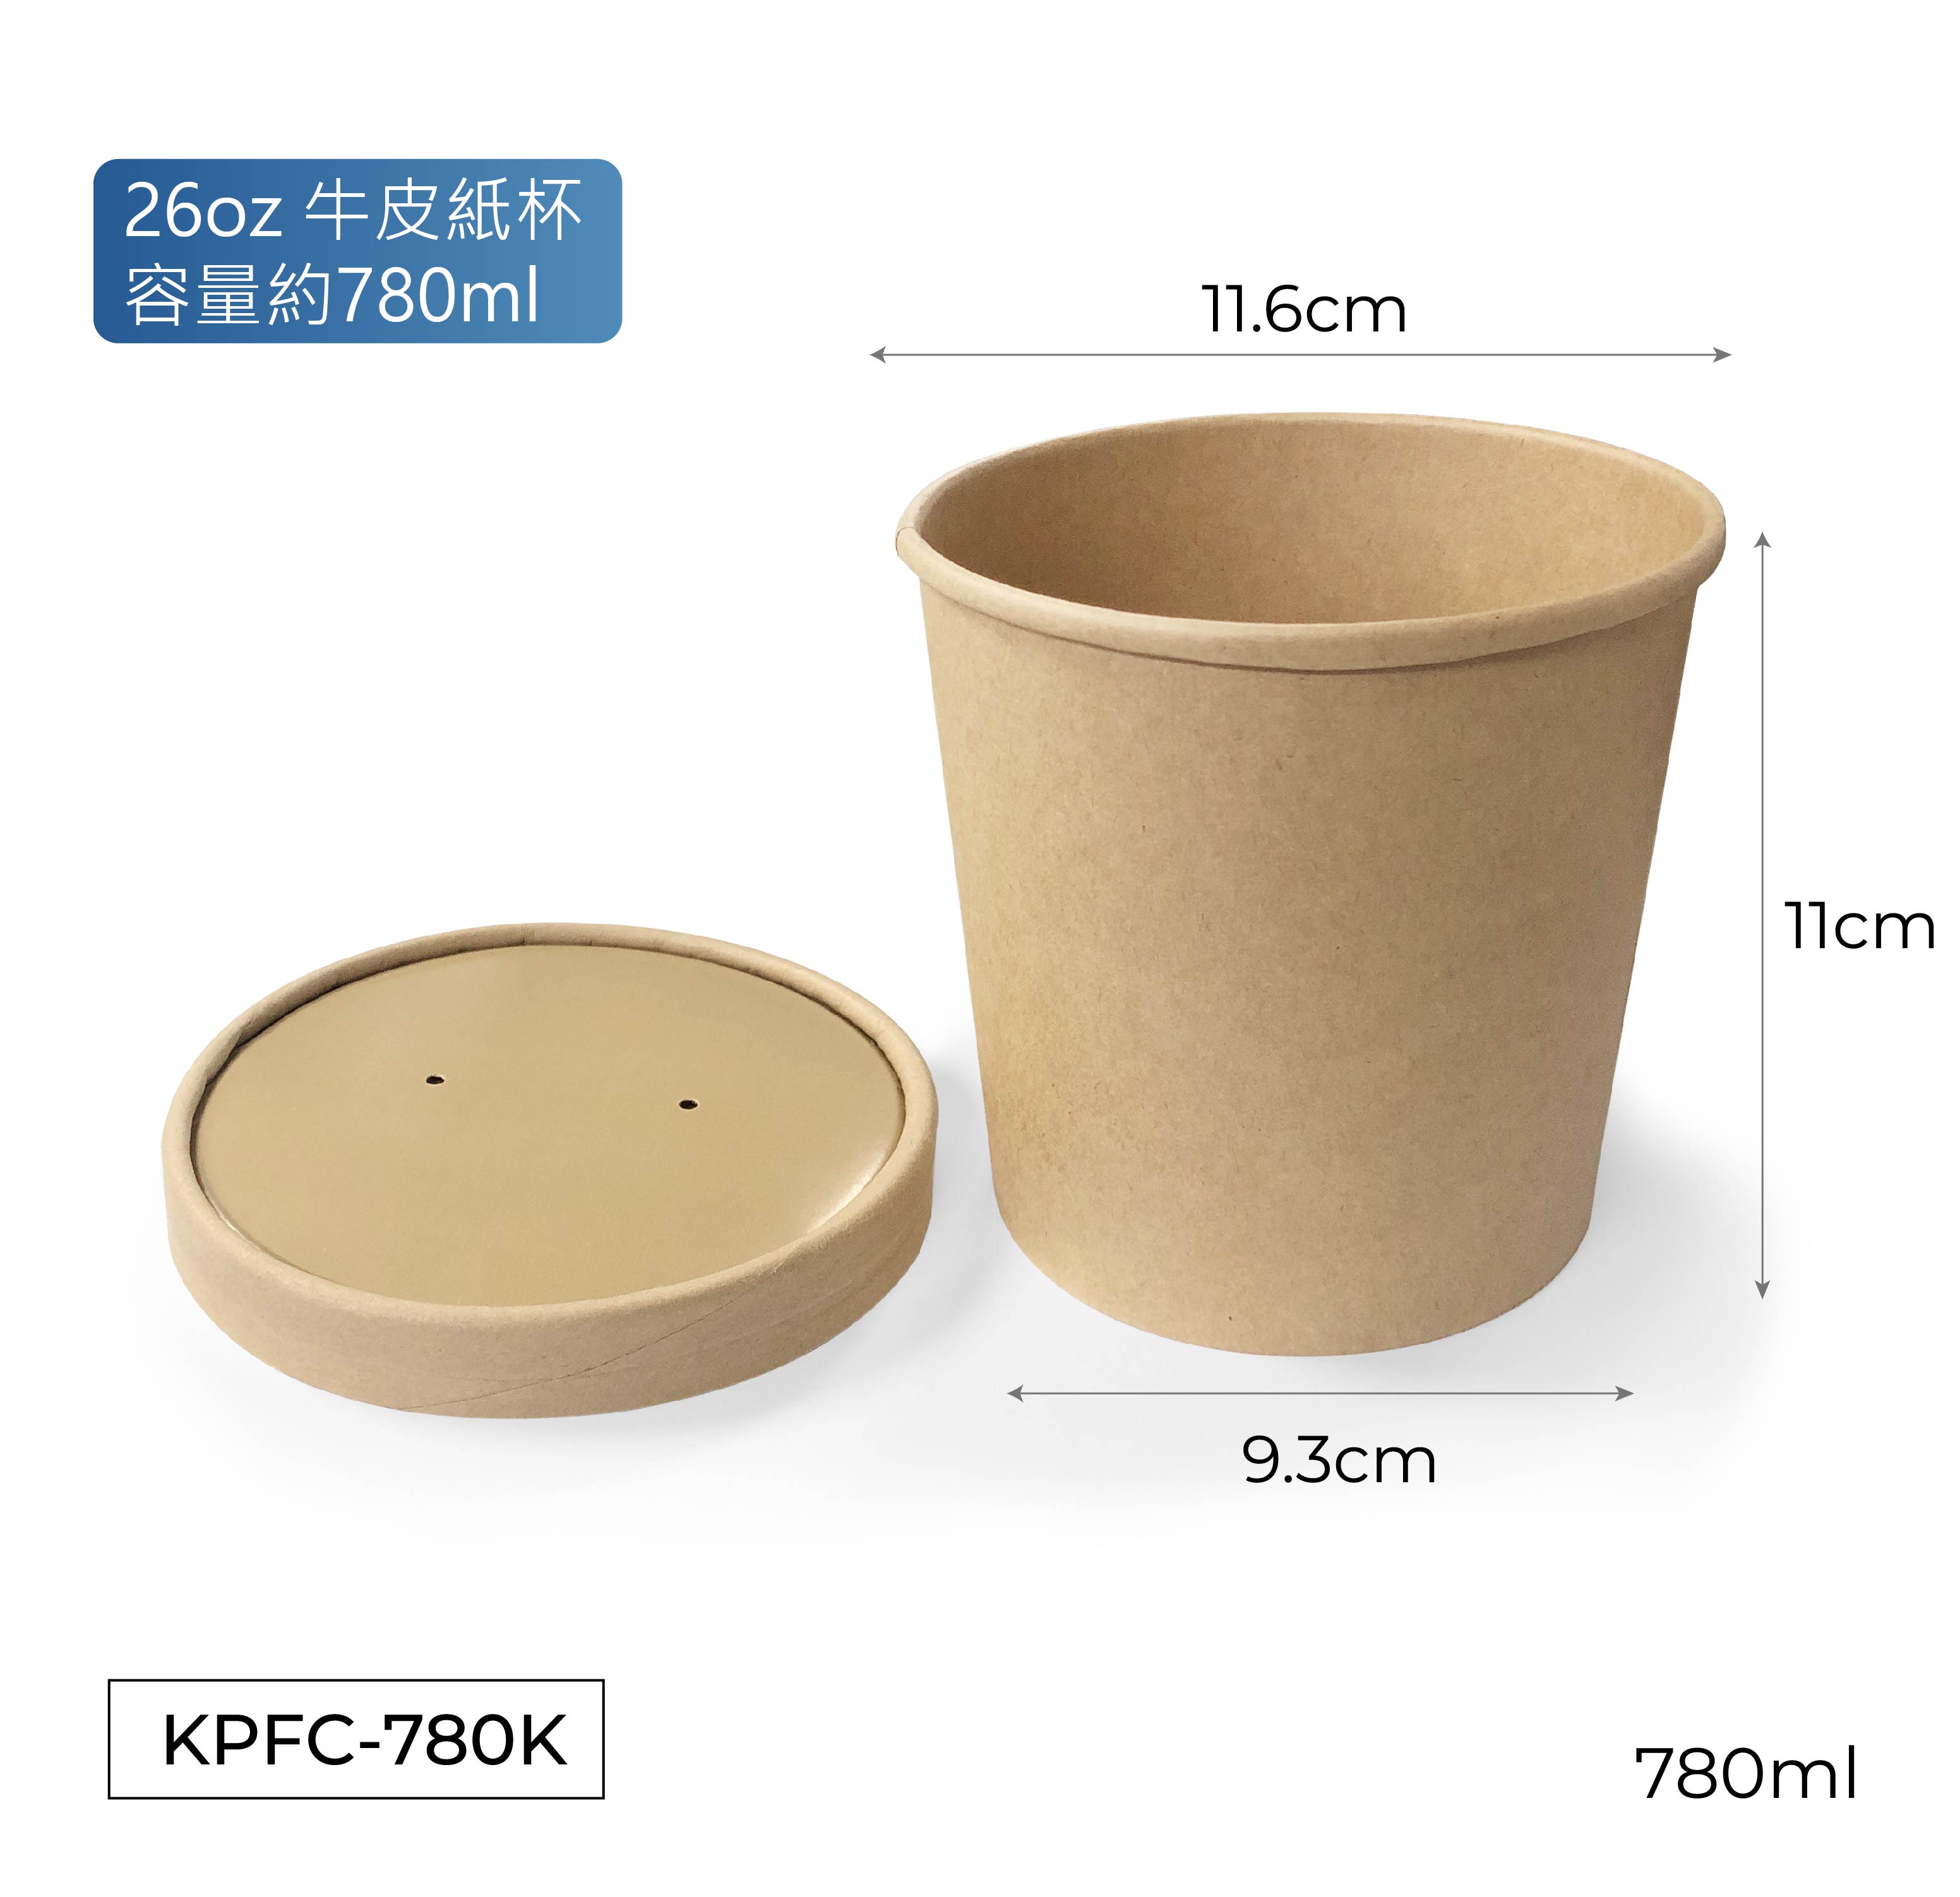 Sugarcane Barley Food Box 蔗麥漿食品餐盒/ Kraft Paper Food Cup (Oil and water resistant)防油防水牛皮紙食物杯